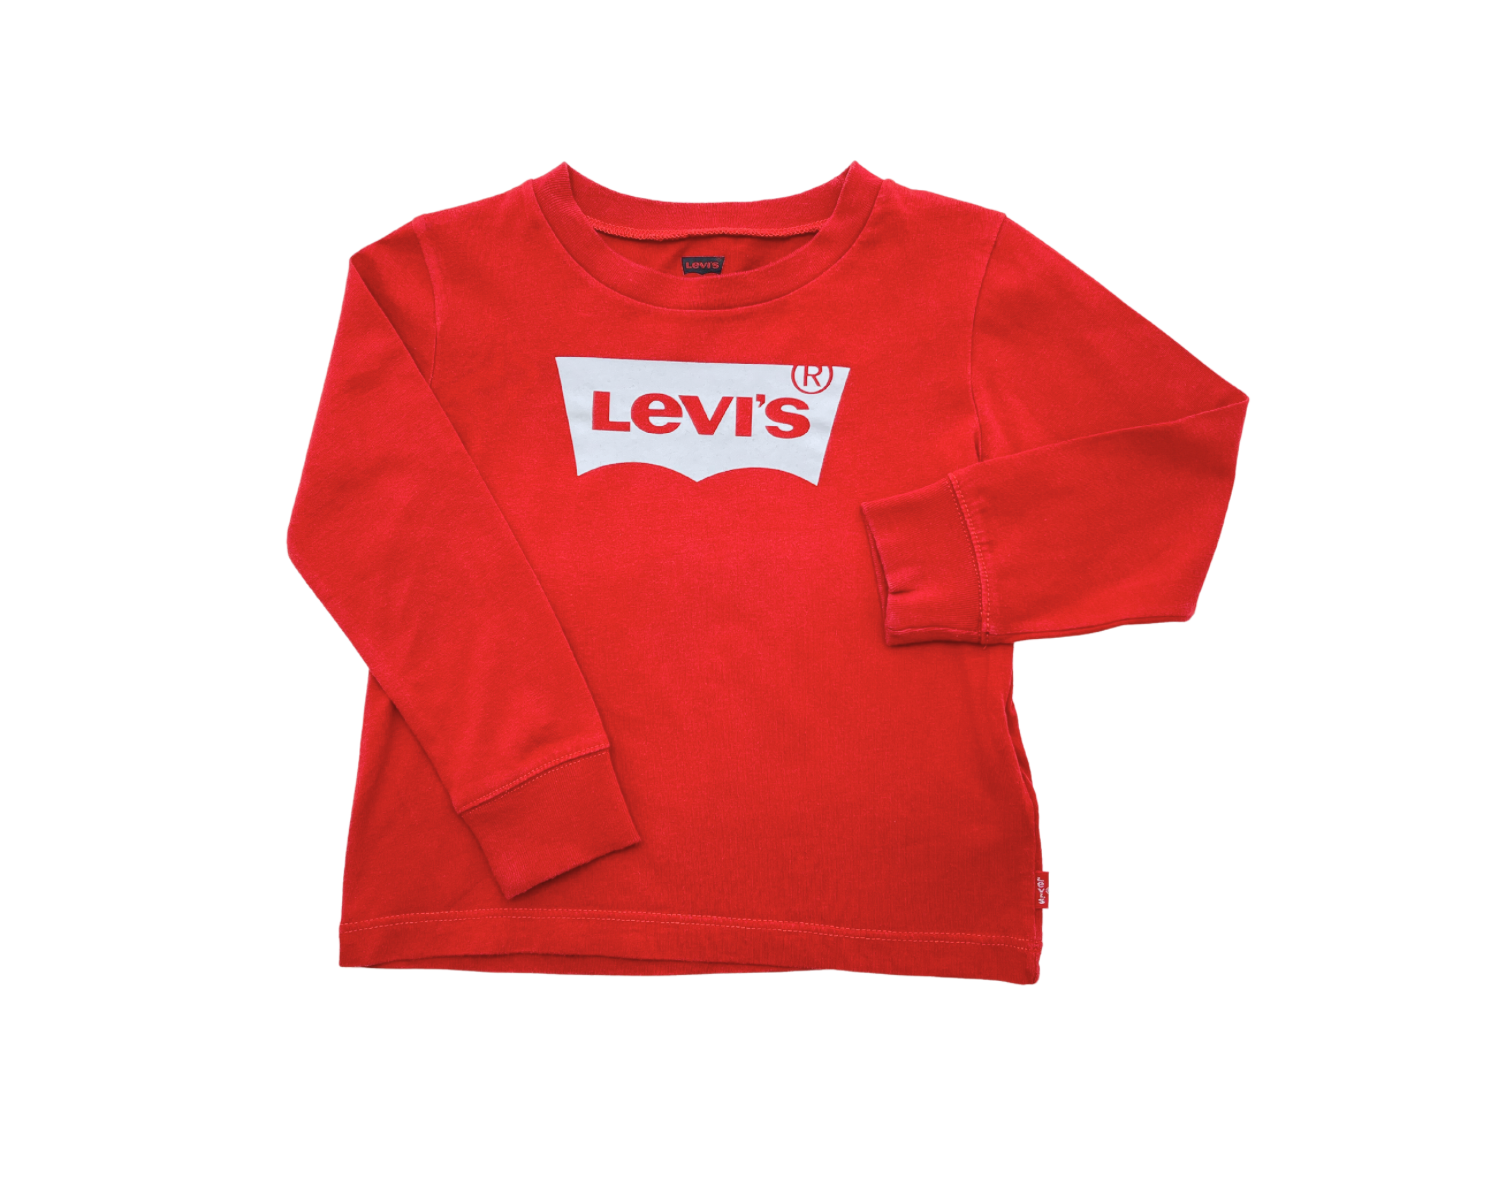 LEVI'S - T-shirt rouge - 2 ans